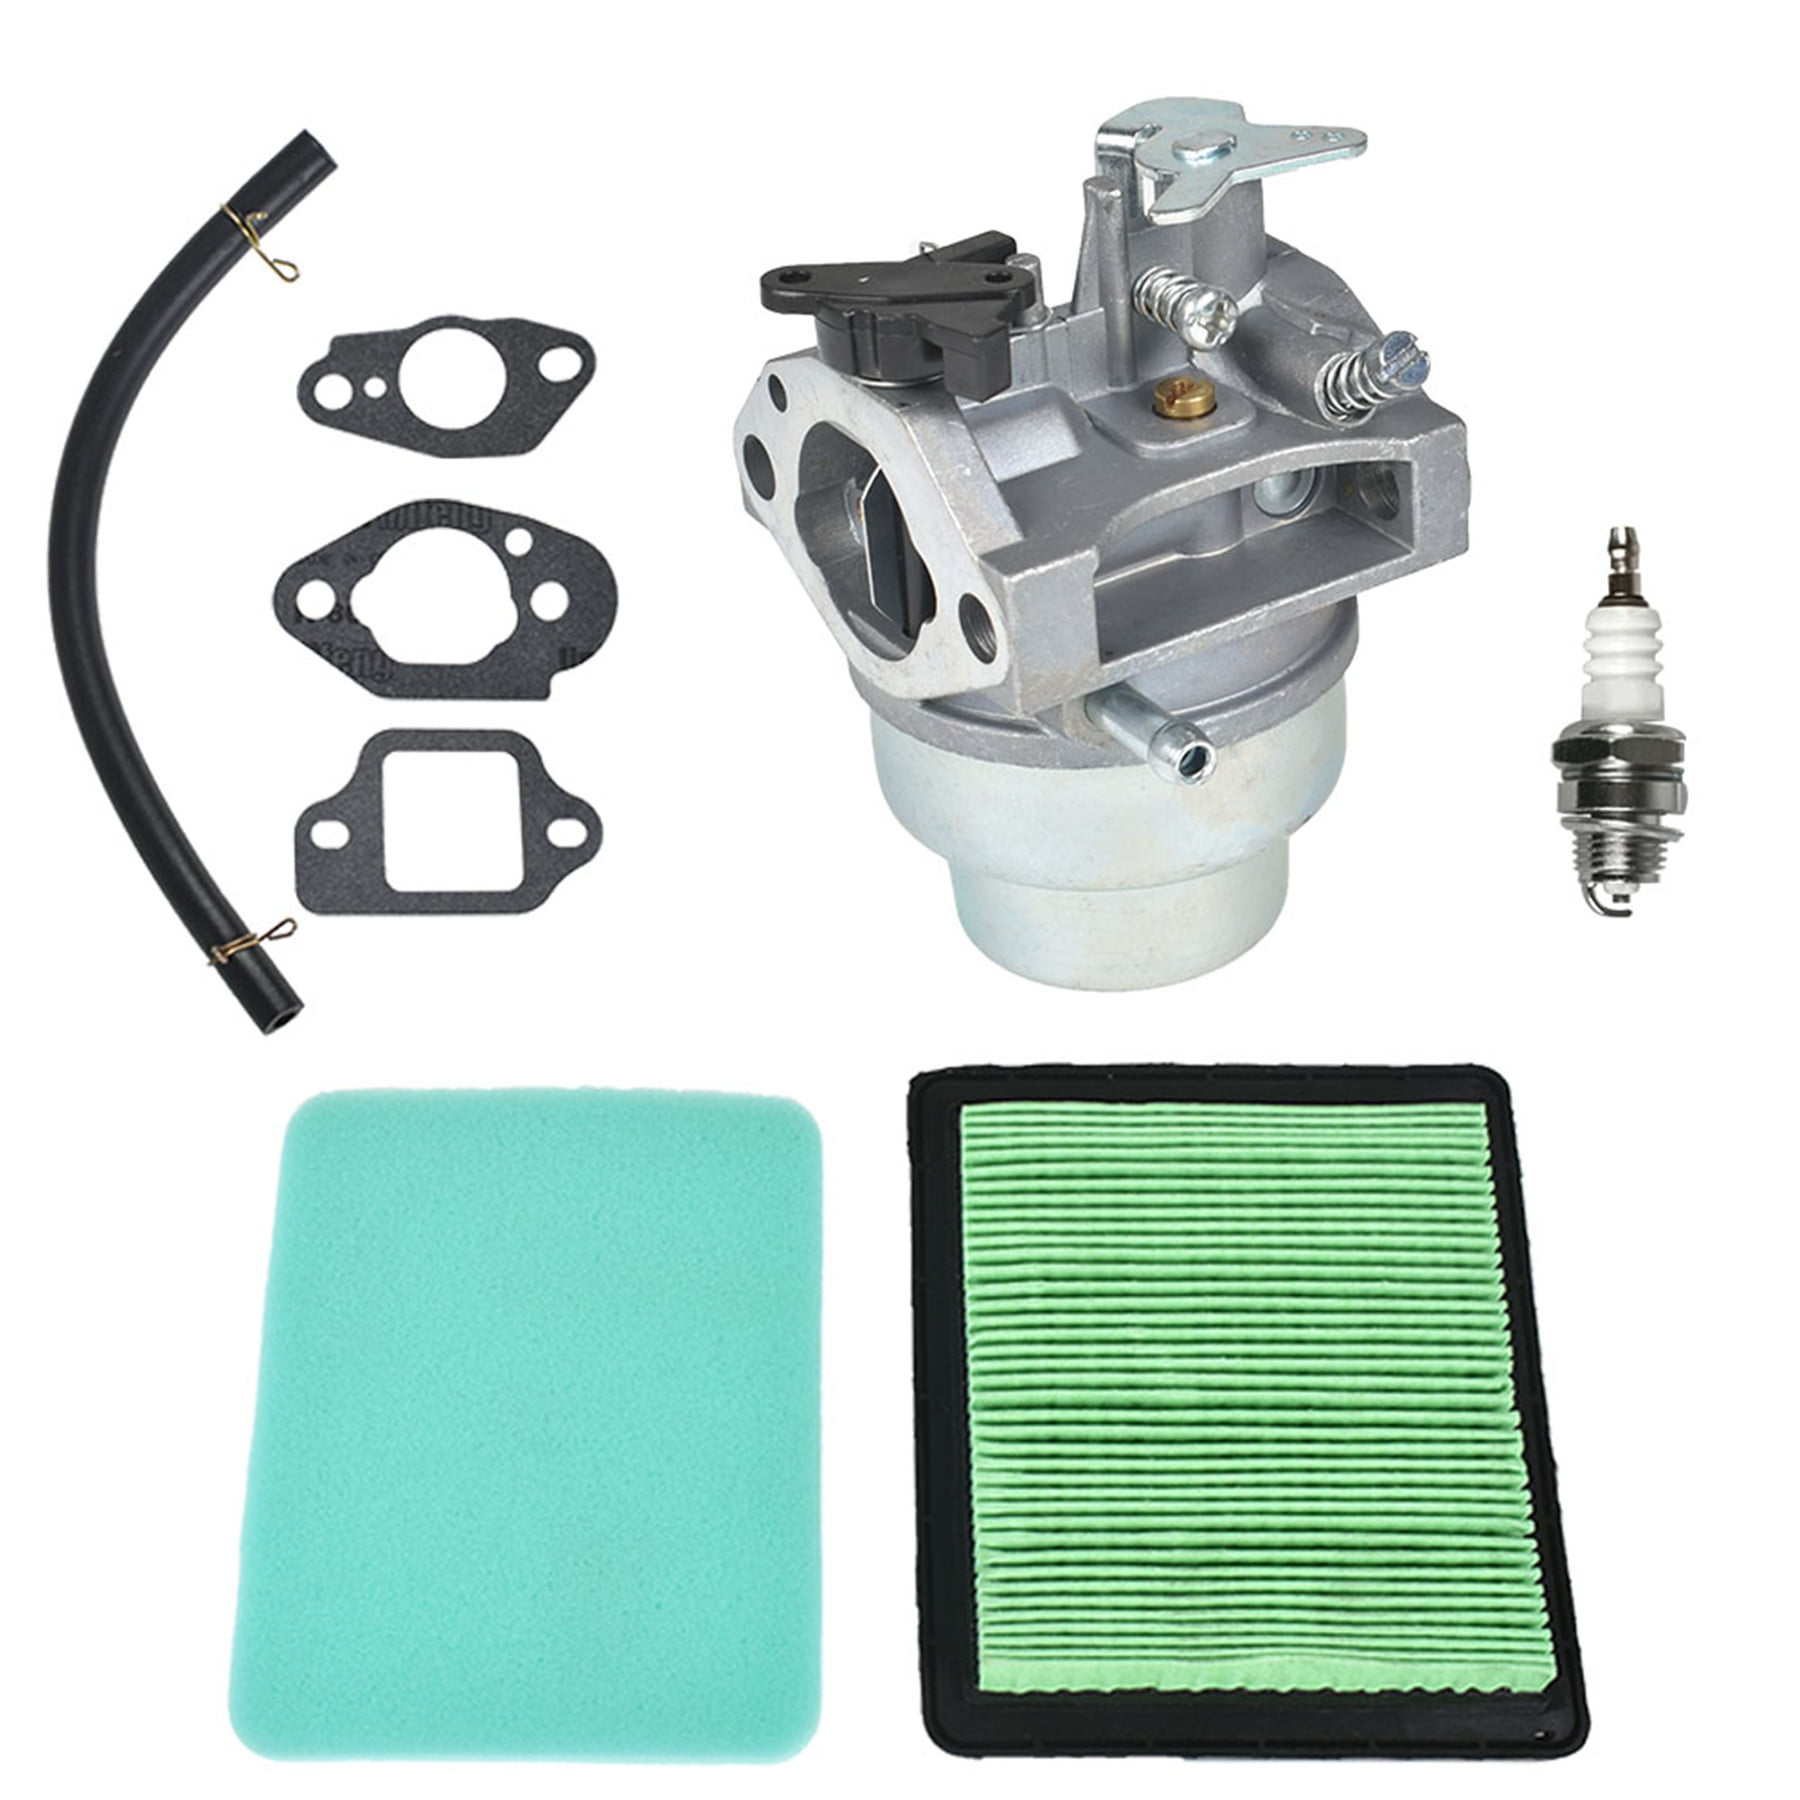 Carburetor Air Filter Kit For Honda HRT216 GCV160 Lawn Mower # 16100-ZM0-803 